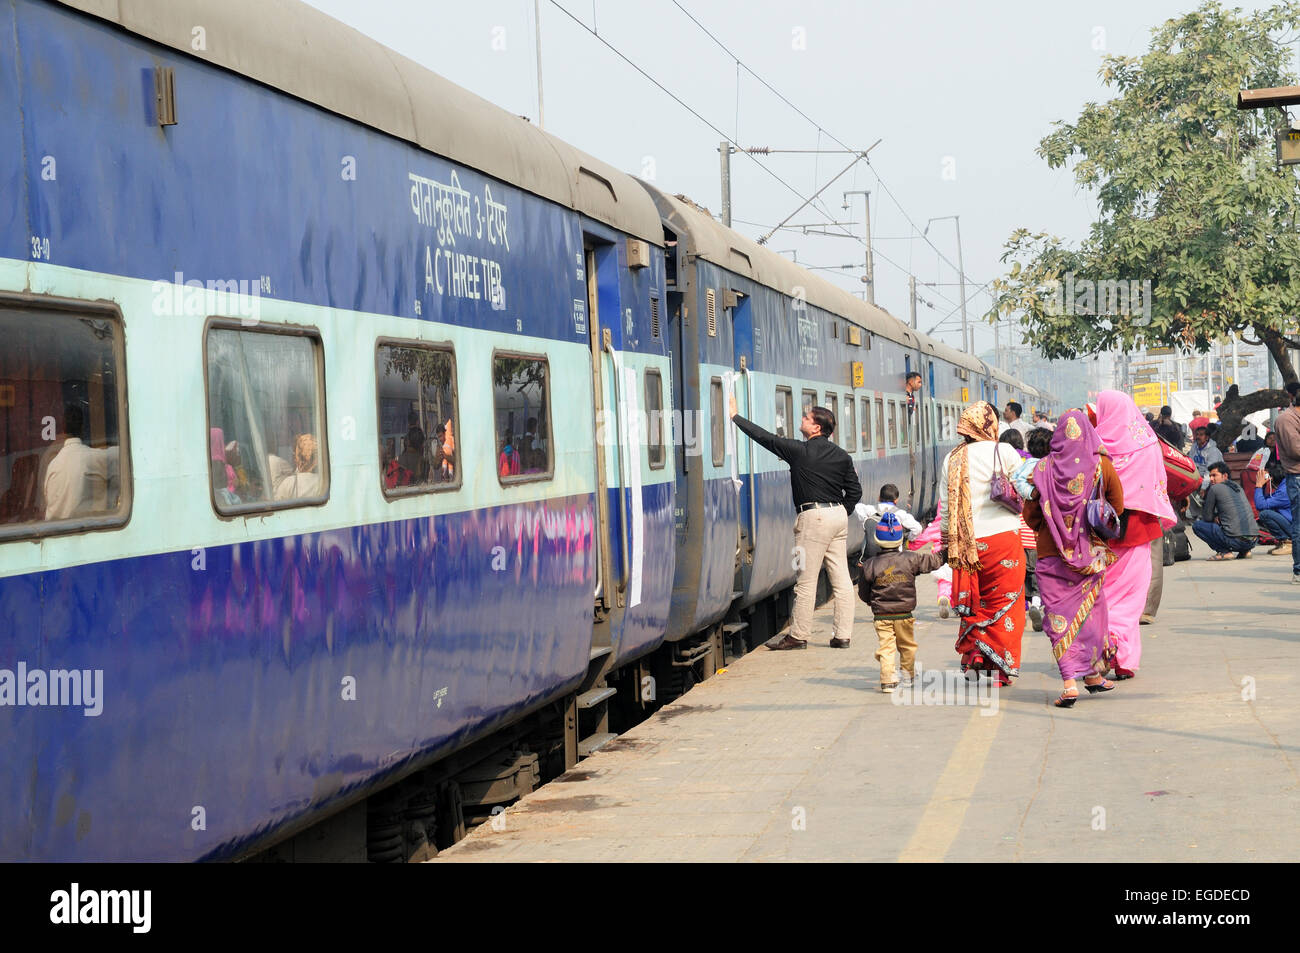 Les Indiens marche sur la plate-forme d'un bord d'un train gare de New Delhi Inde Banque D'Images